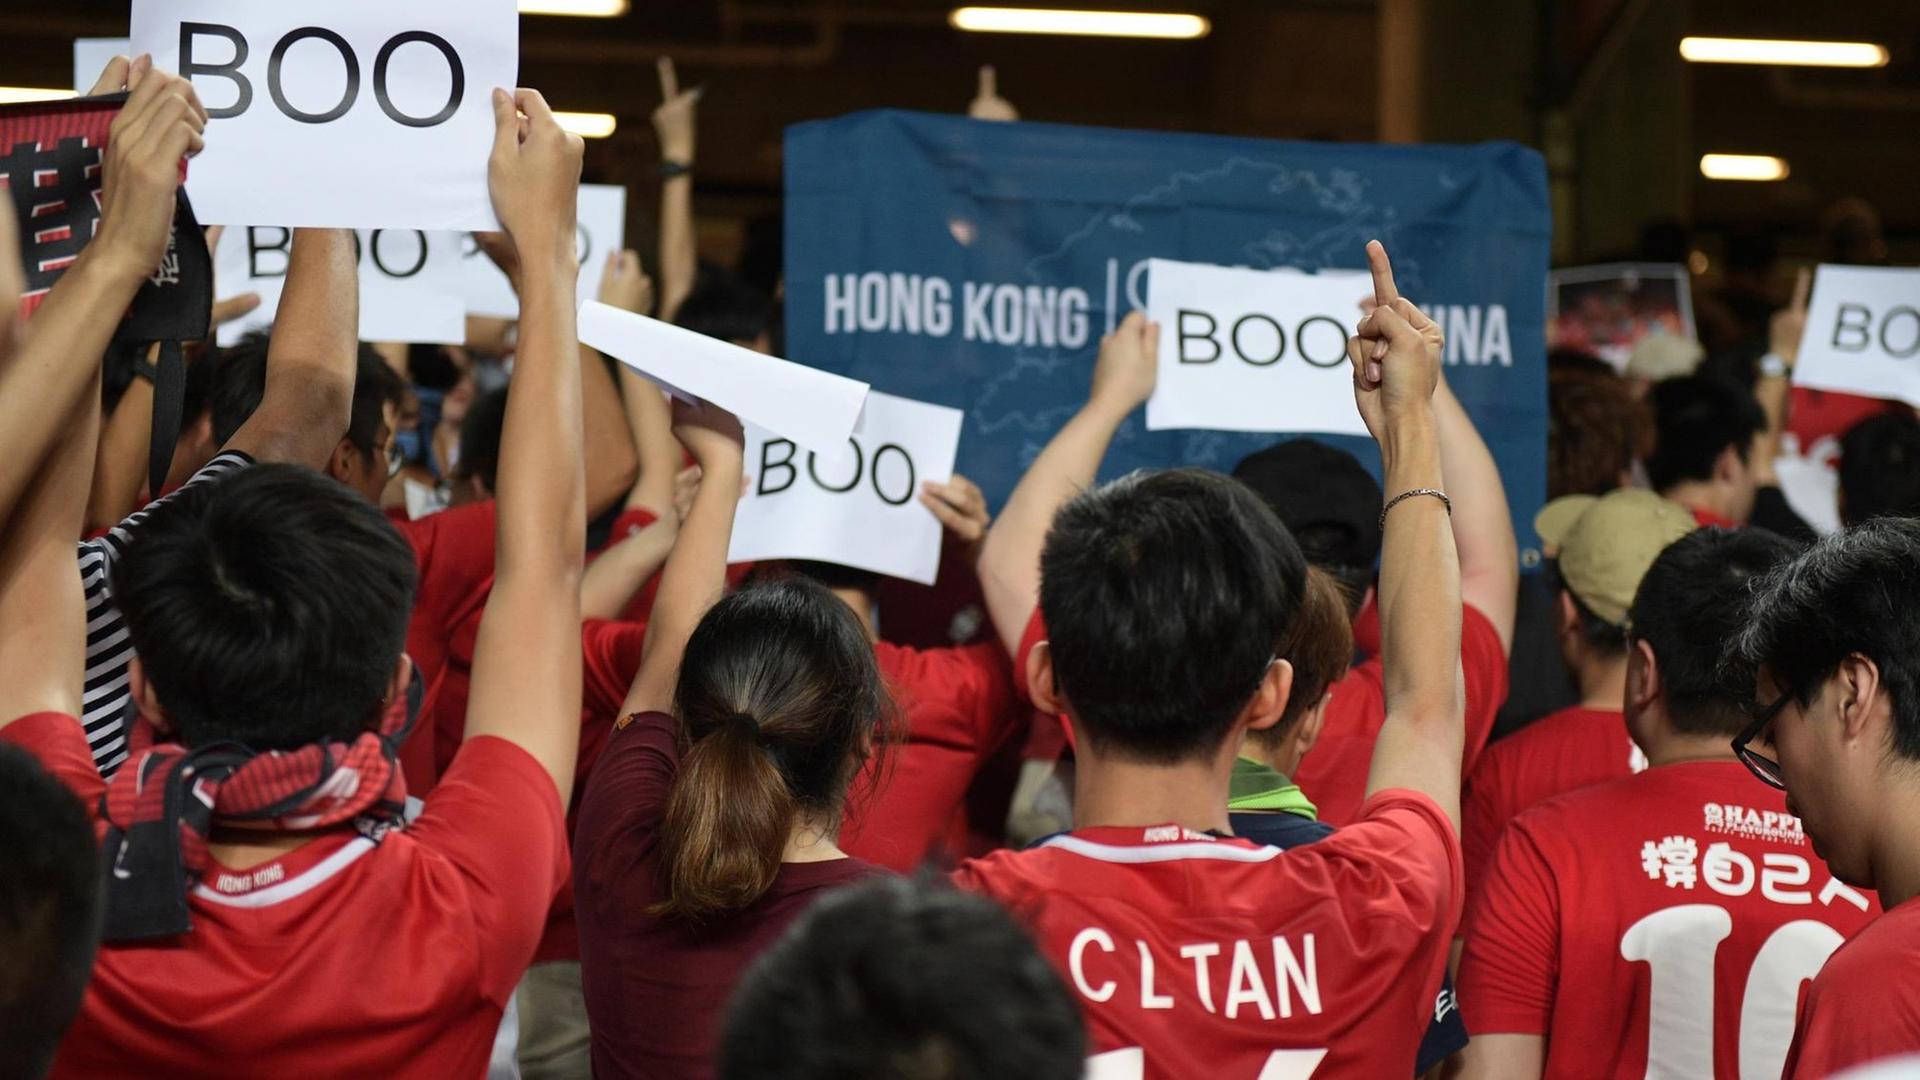 Fußballfans drehen dem Spiel zwischen Iran und Hongkong den Rücken zu und halten Schilder hoch, auf denen "Boo" steht.